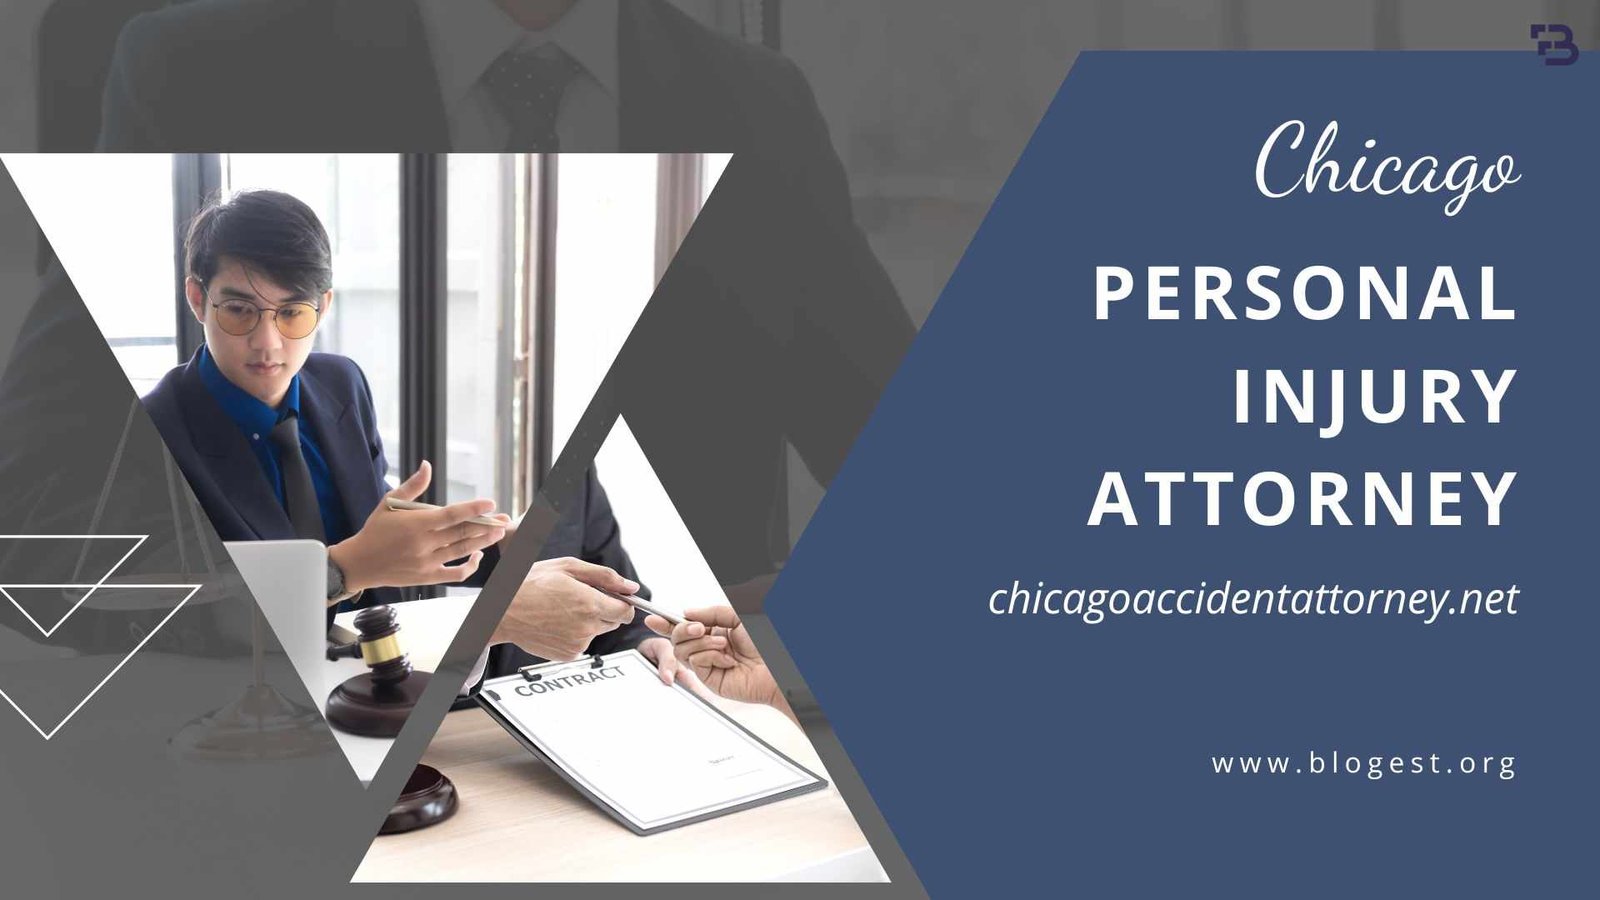 Chicago Personal Injury Attorney Chicagoaccidentattorney.net